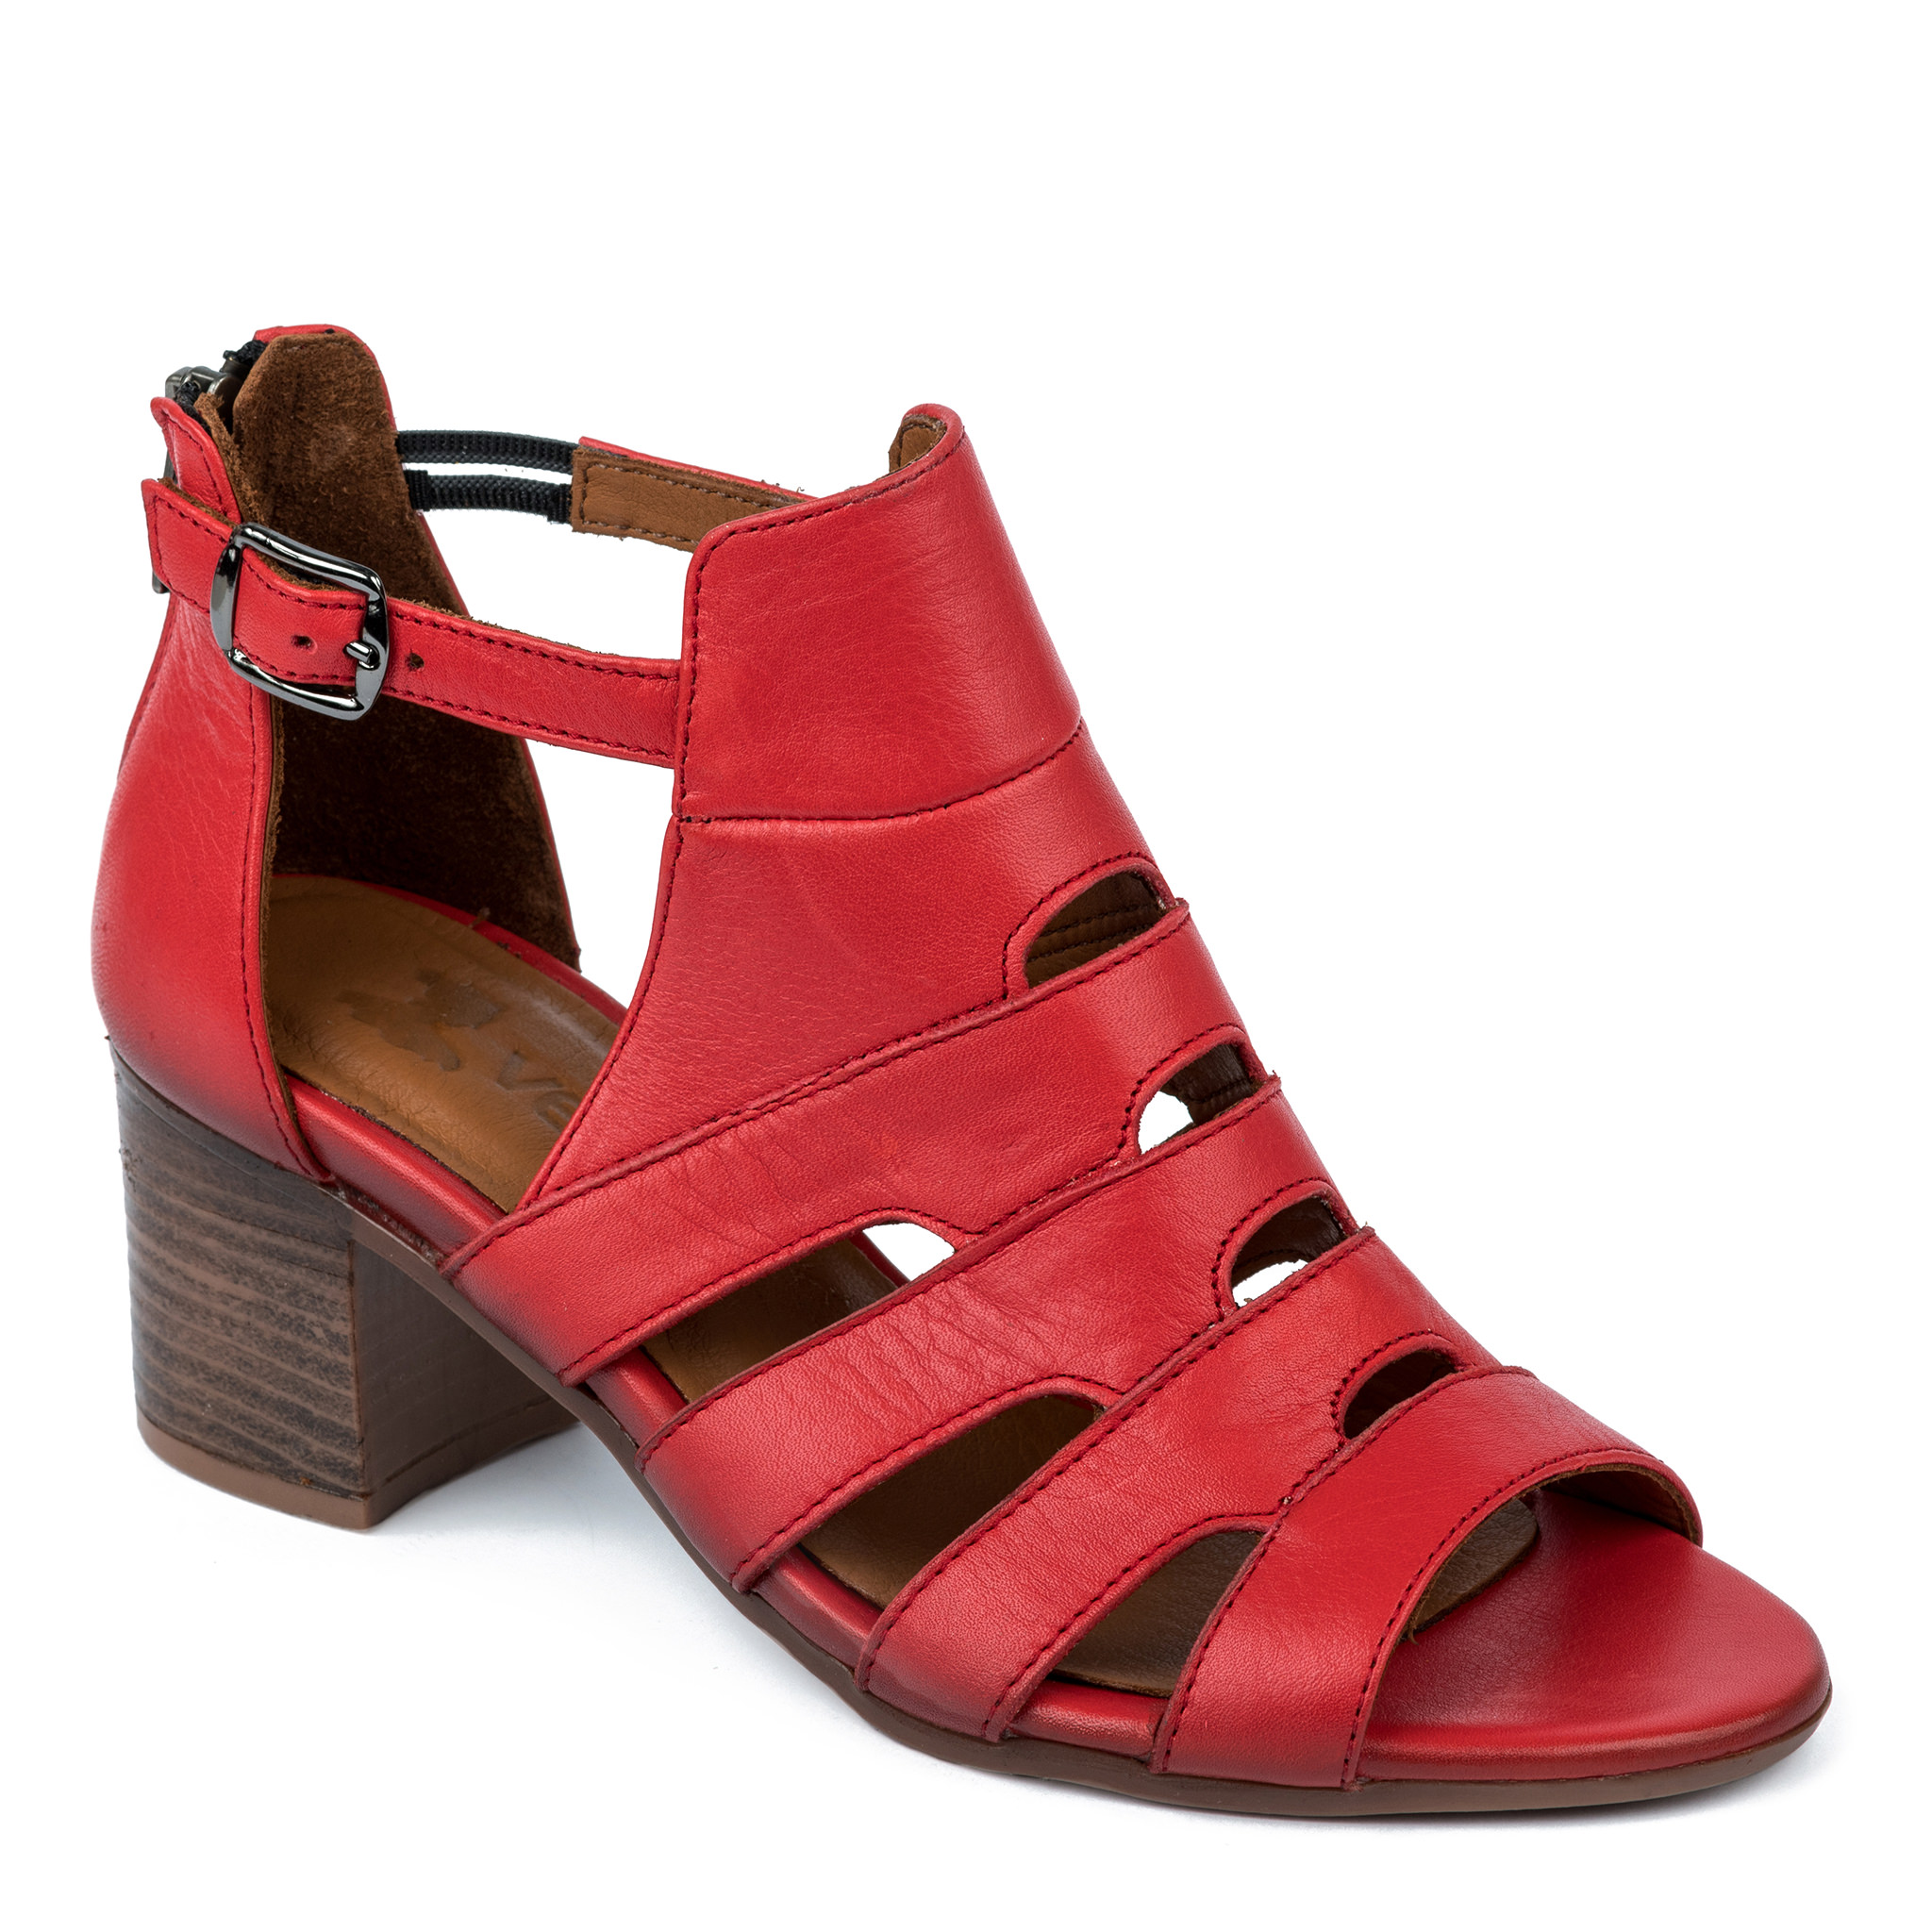 Women sandals A233 - RED